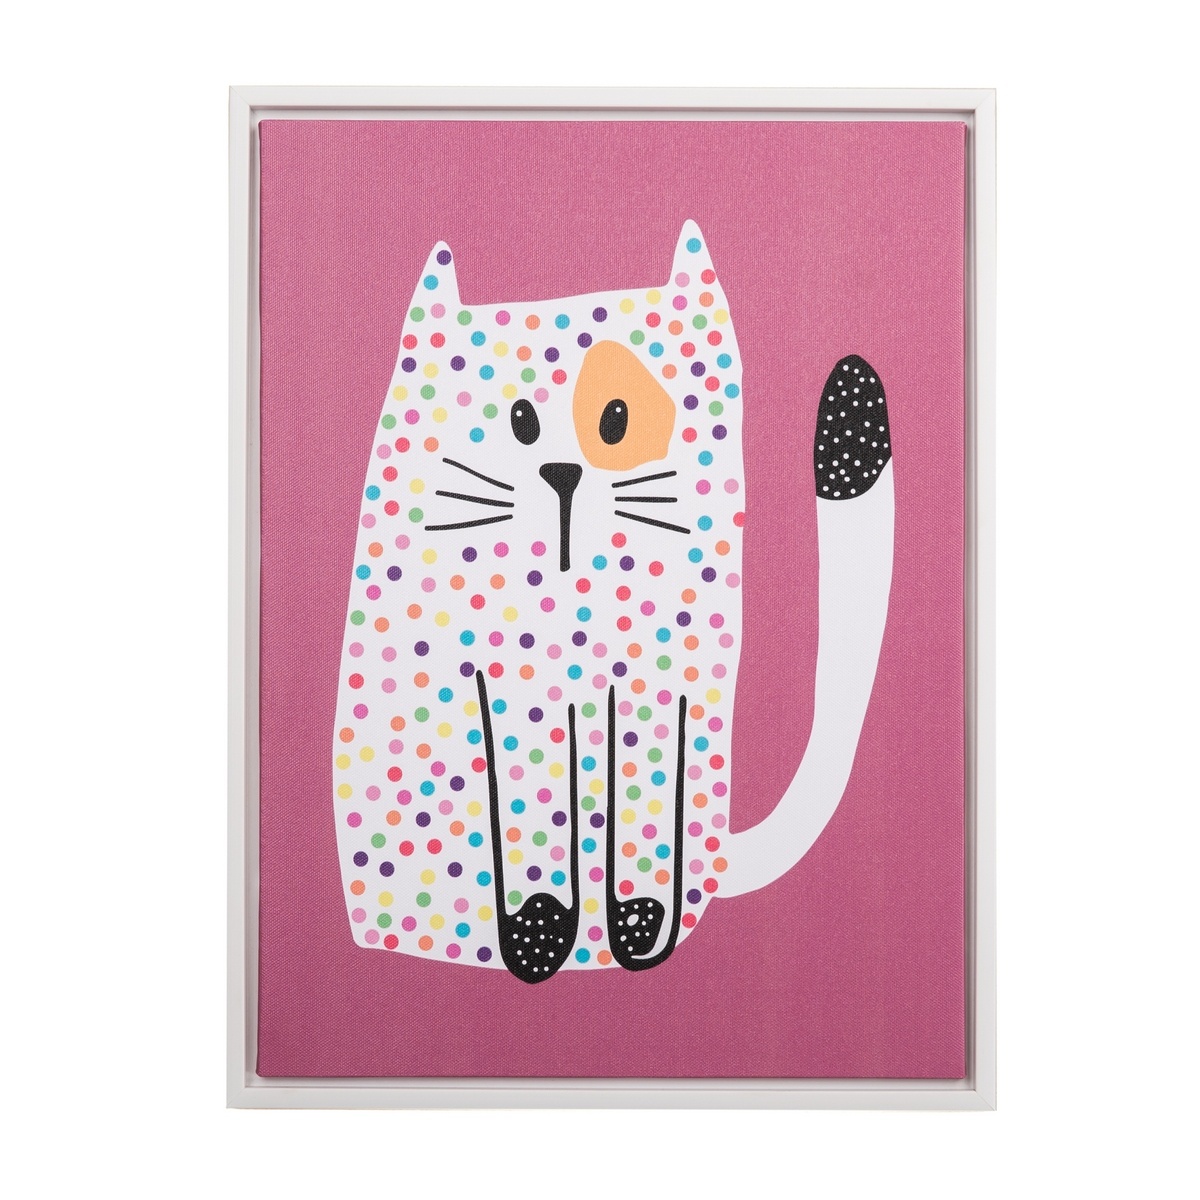 Poza Tablou pe panza Dotted kitten roz, 30 x 40 cm